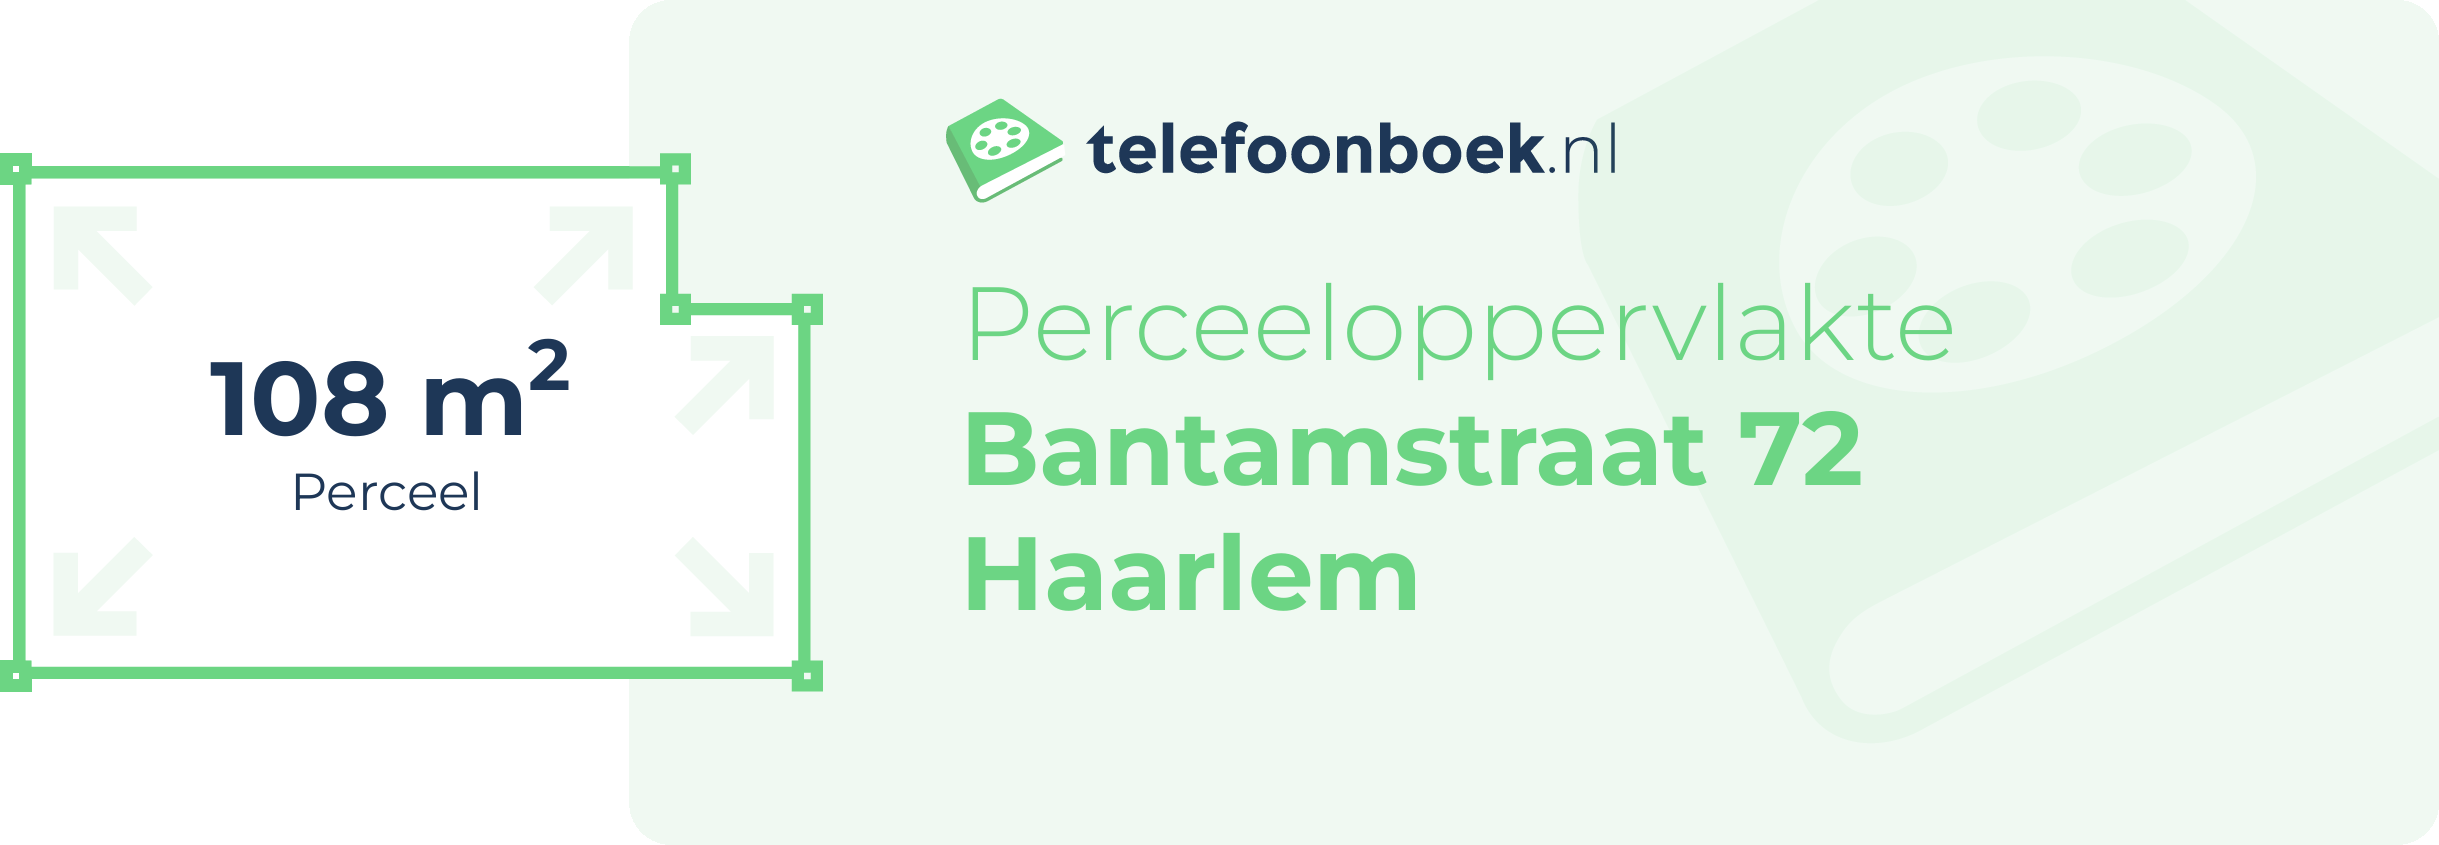 Perceeloppervlakte Bantamstraat 72 Haarlem